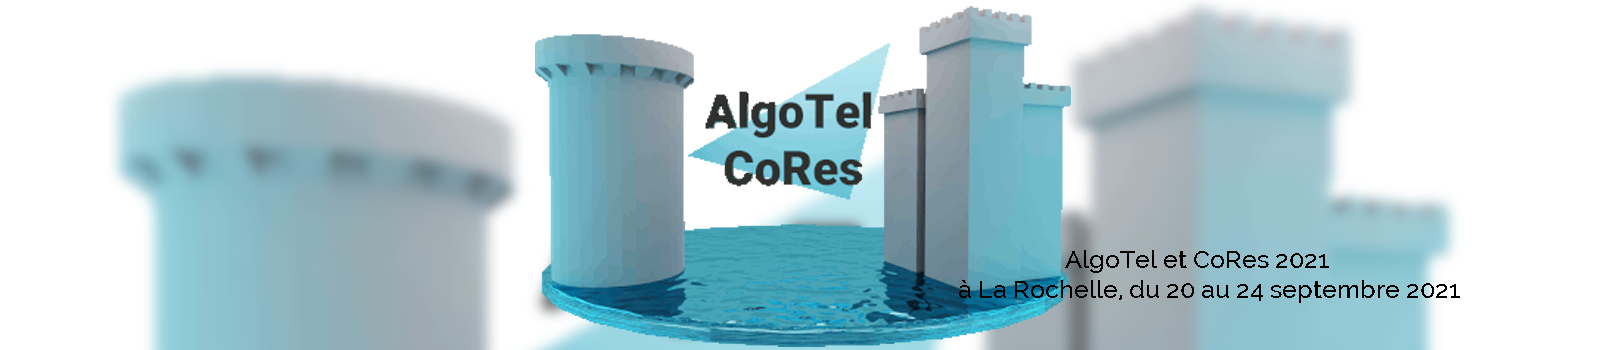 AlgoTel et CoRes 2021